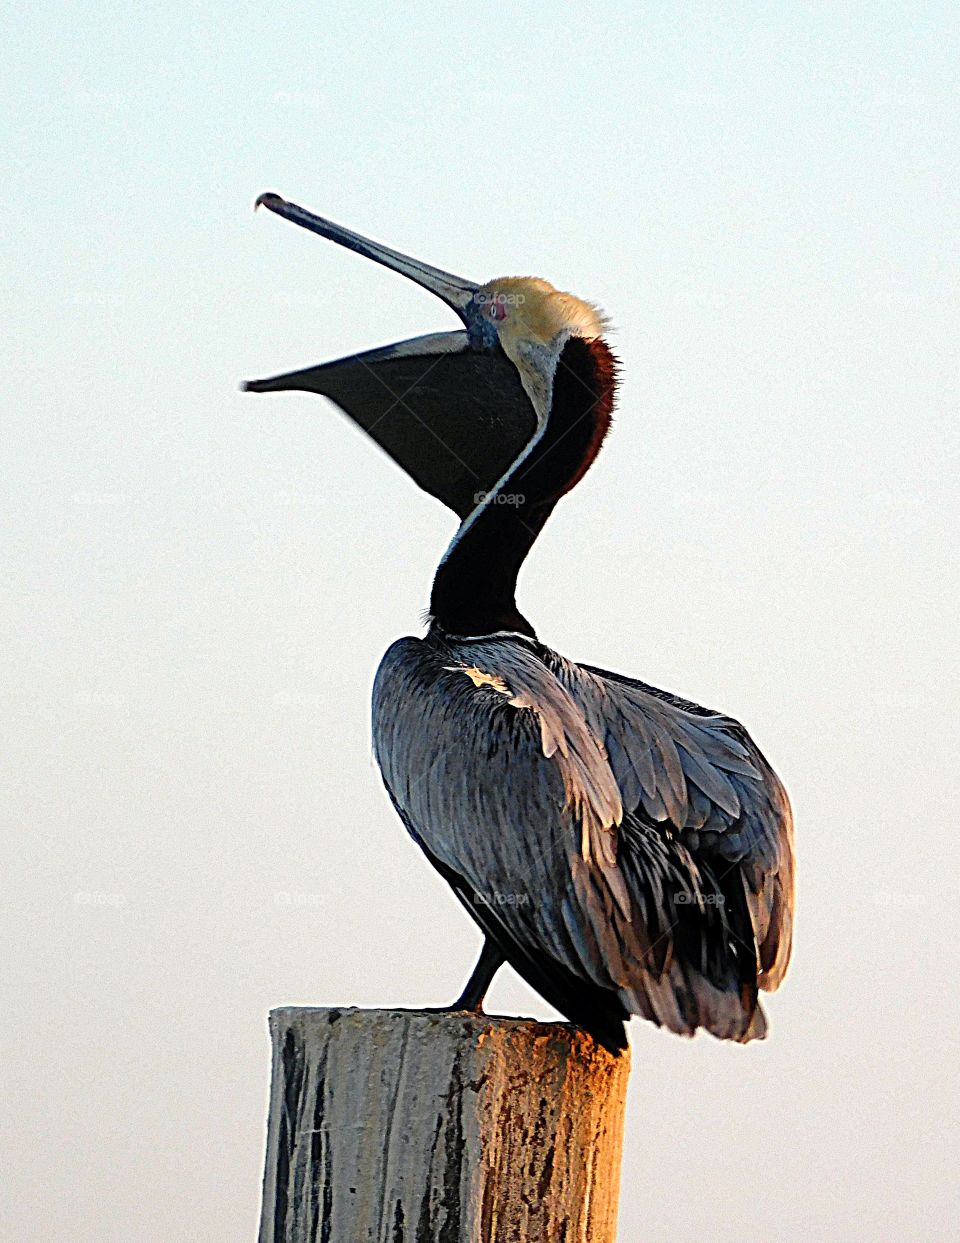 A sunning pelican